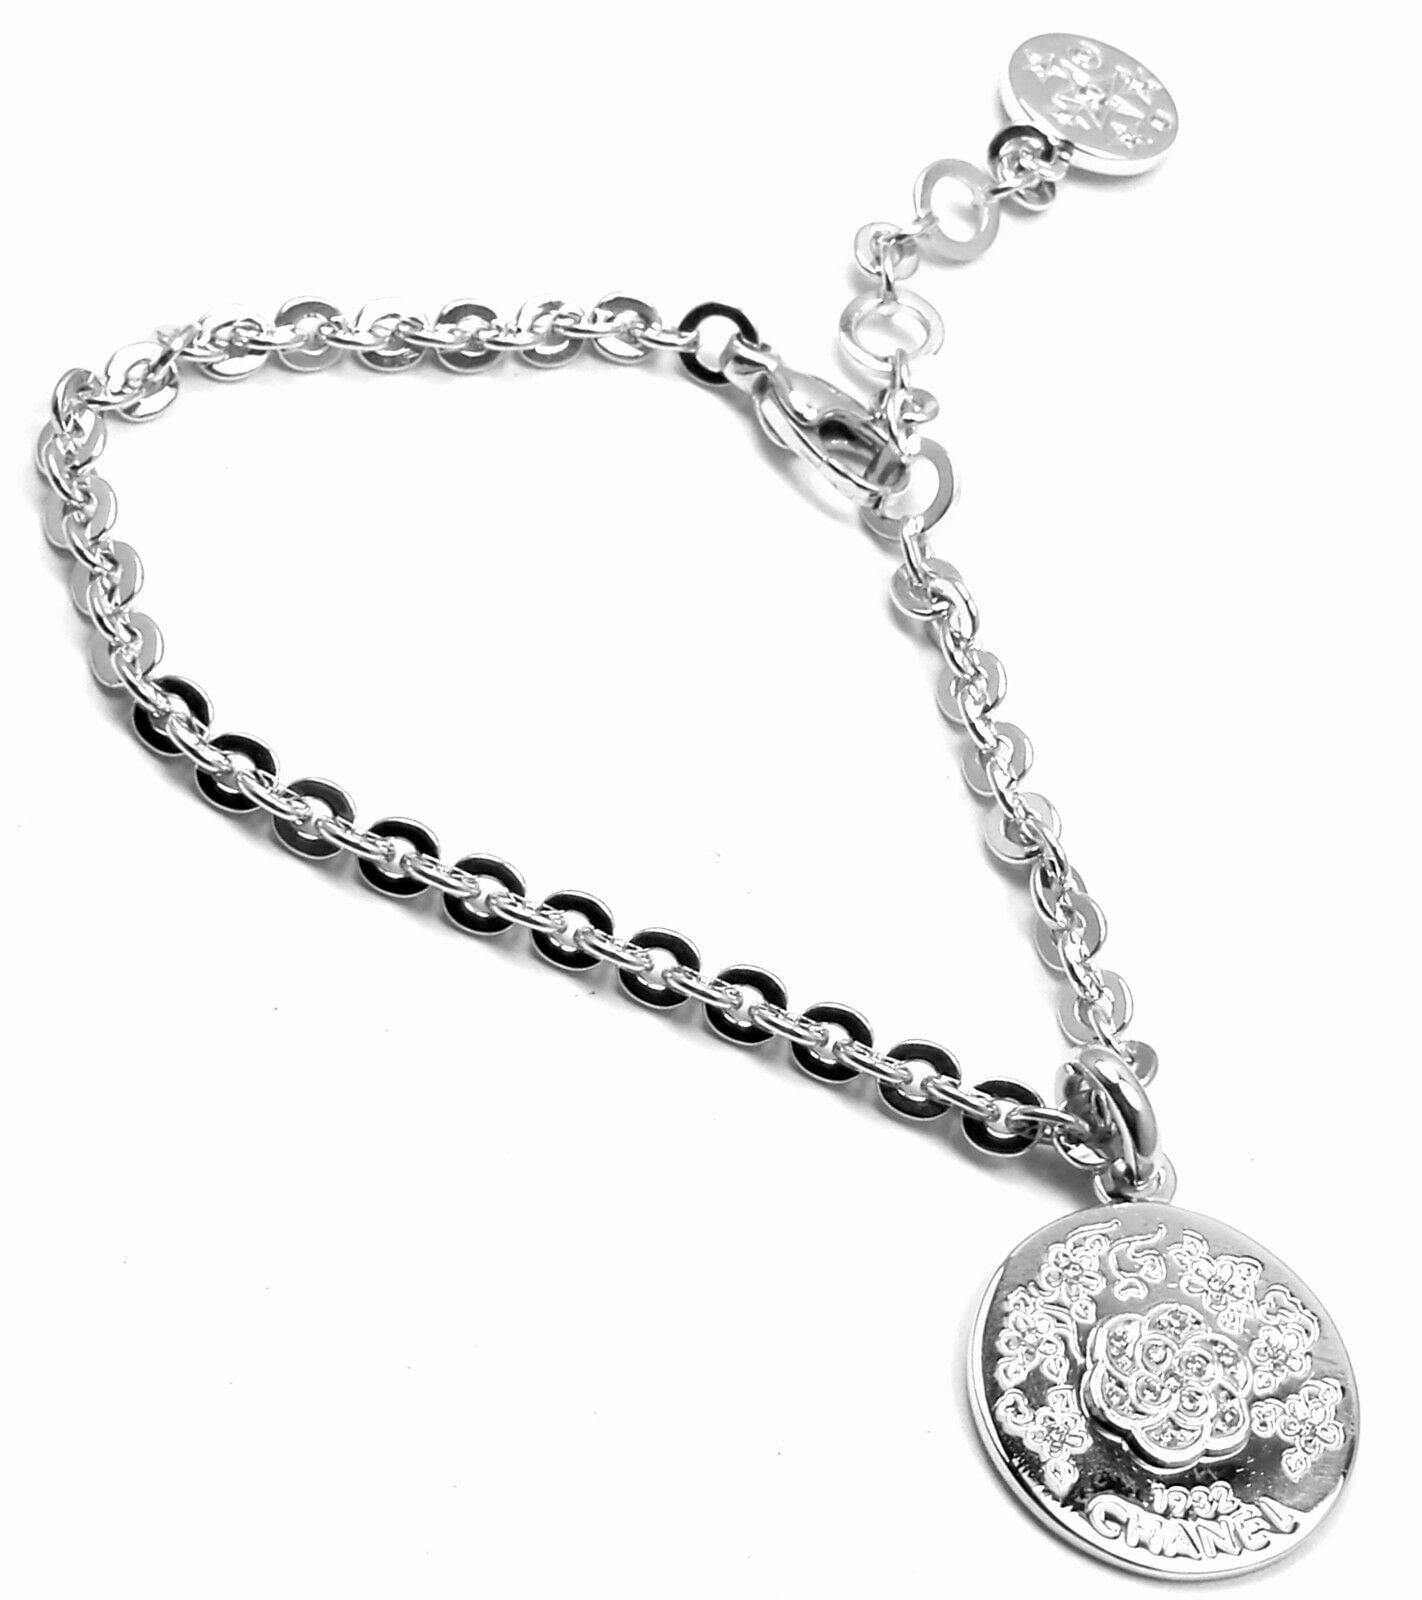 Authentic! Chanel Camellia Comete 18k White Gold Diamond Link